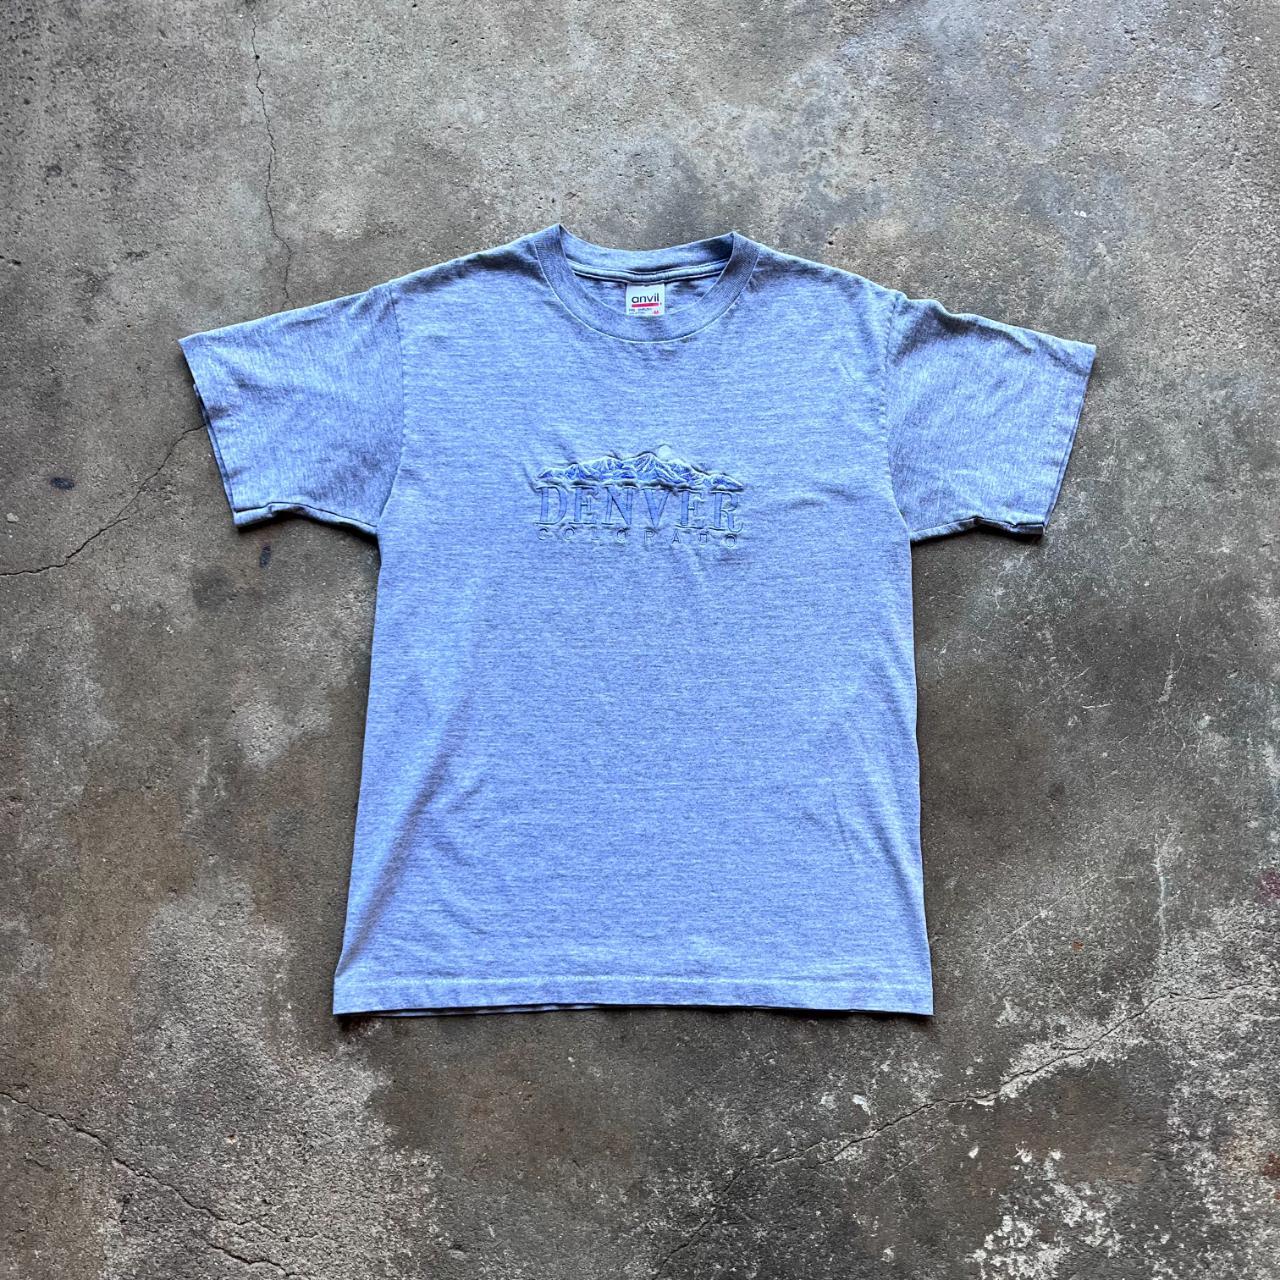 Vintage 90s 'Denver' Stitched T-shirt [Medium]